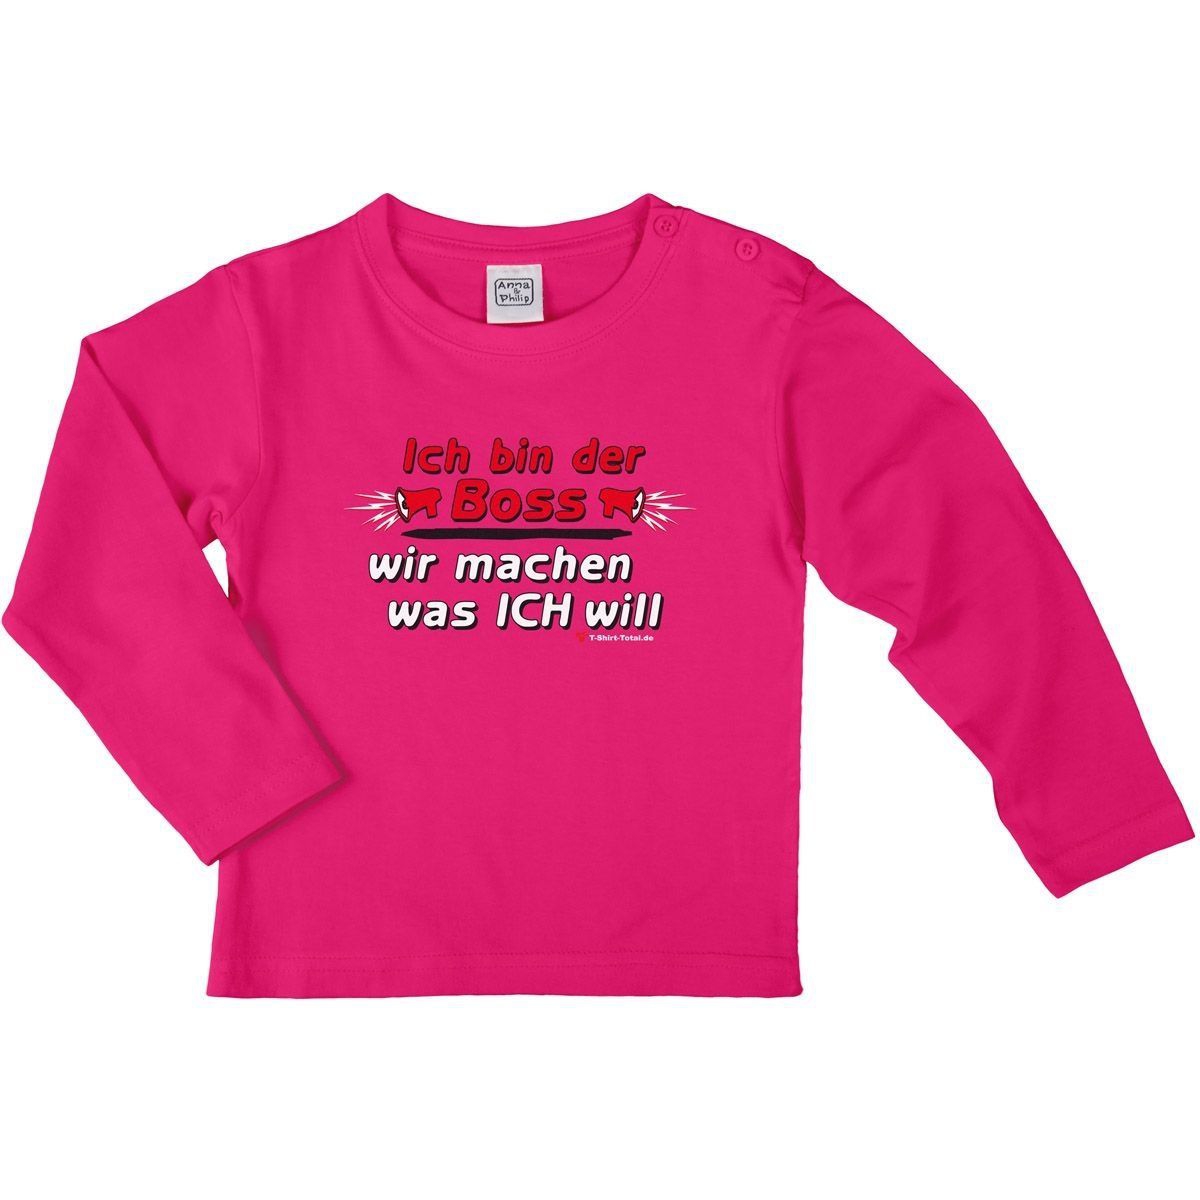 Ich bin der Boss Kinder Langarm Shirt pink 122 / 128